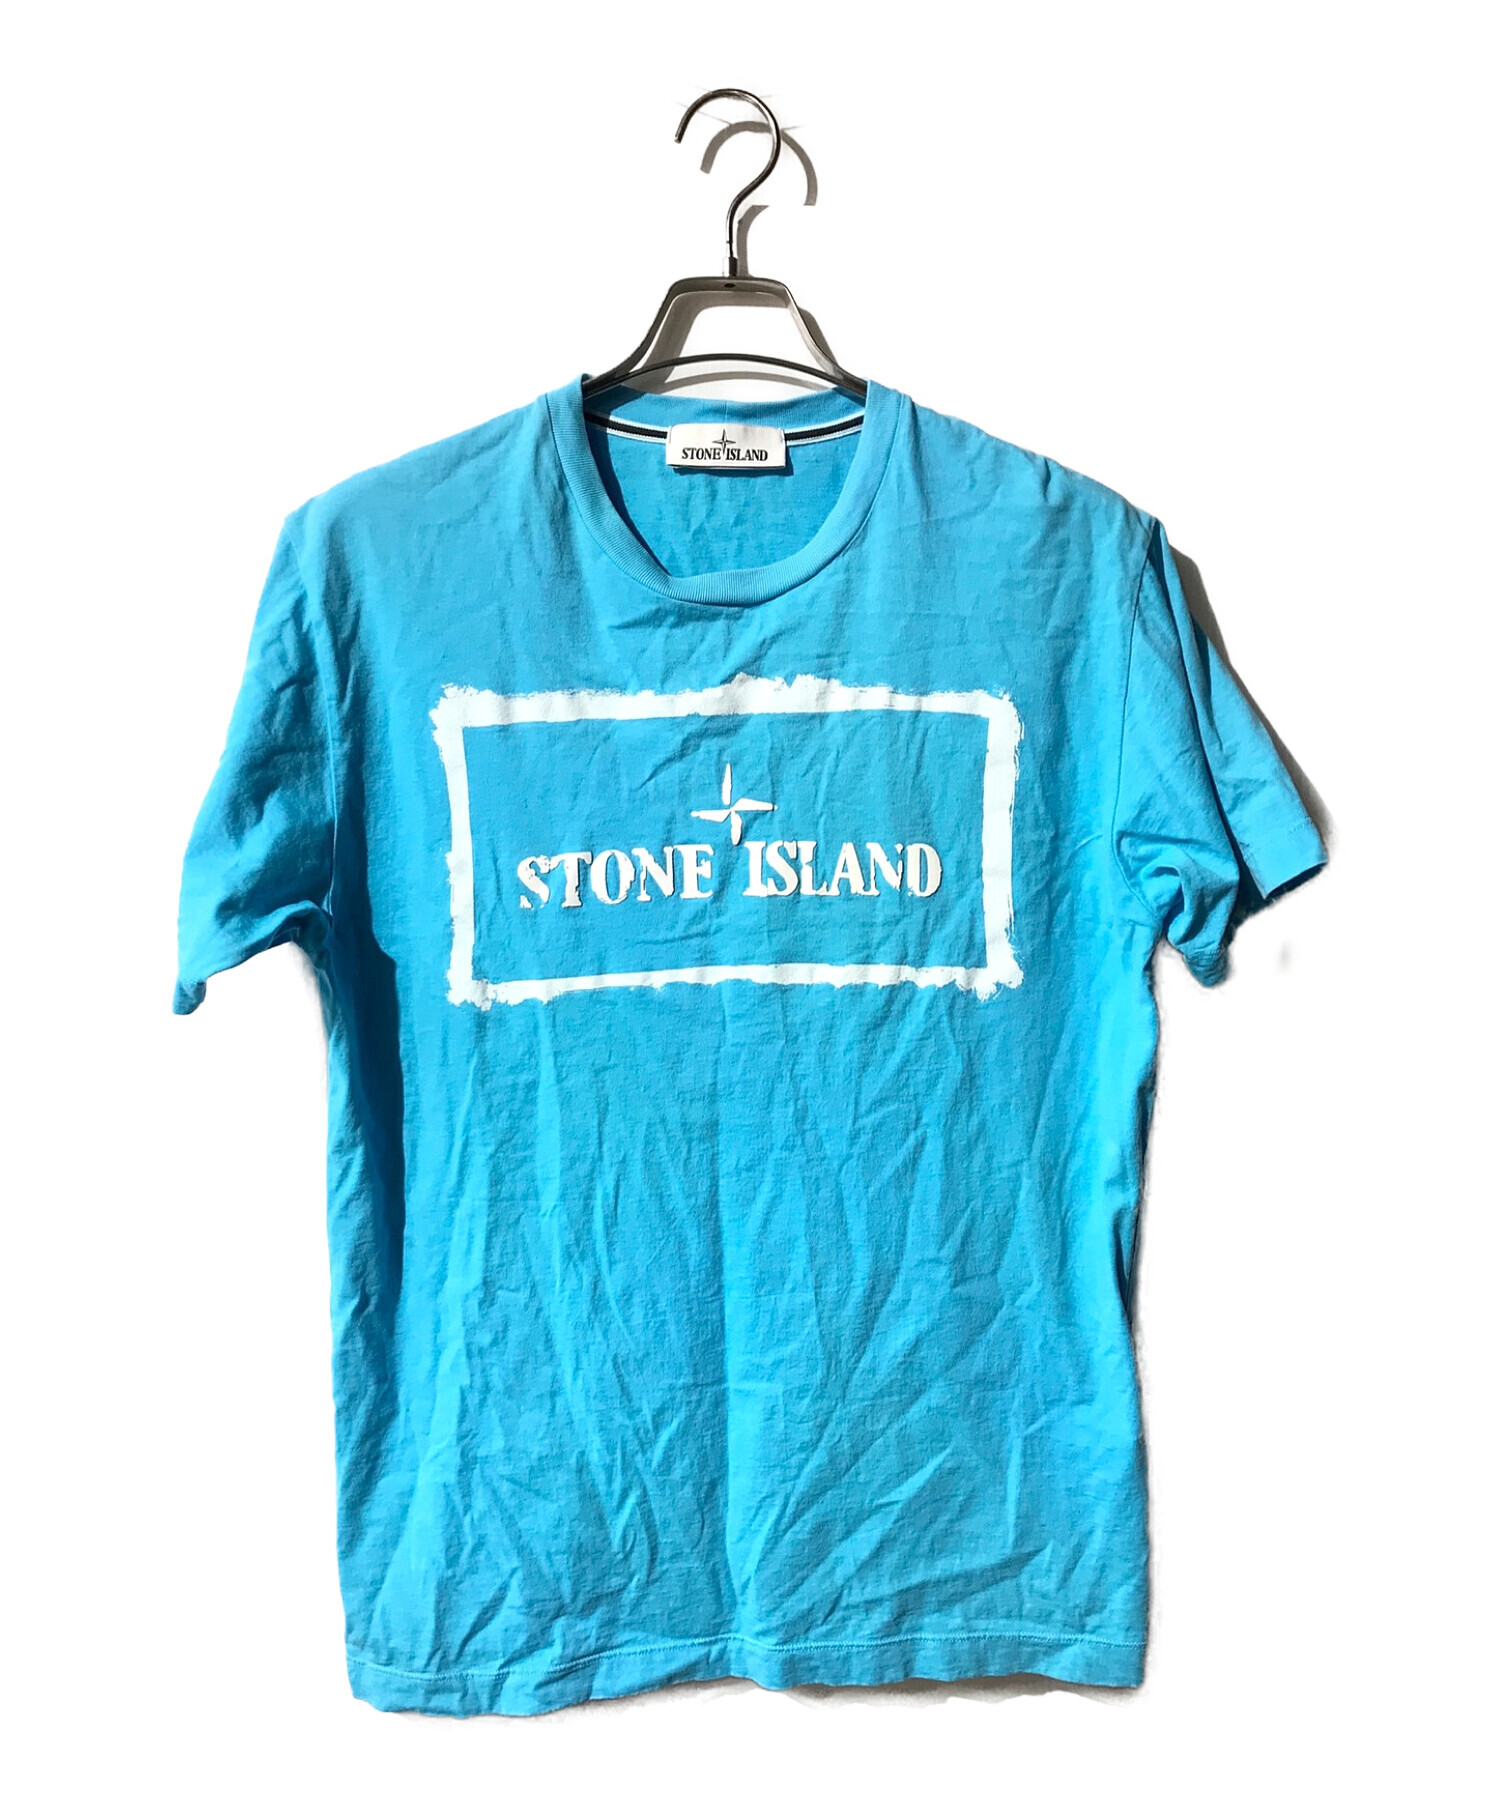 STONE ISLAND (ストーンアイランド) クルーネックカットソー スカイブルー サイズ:M